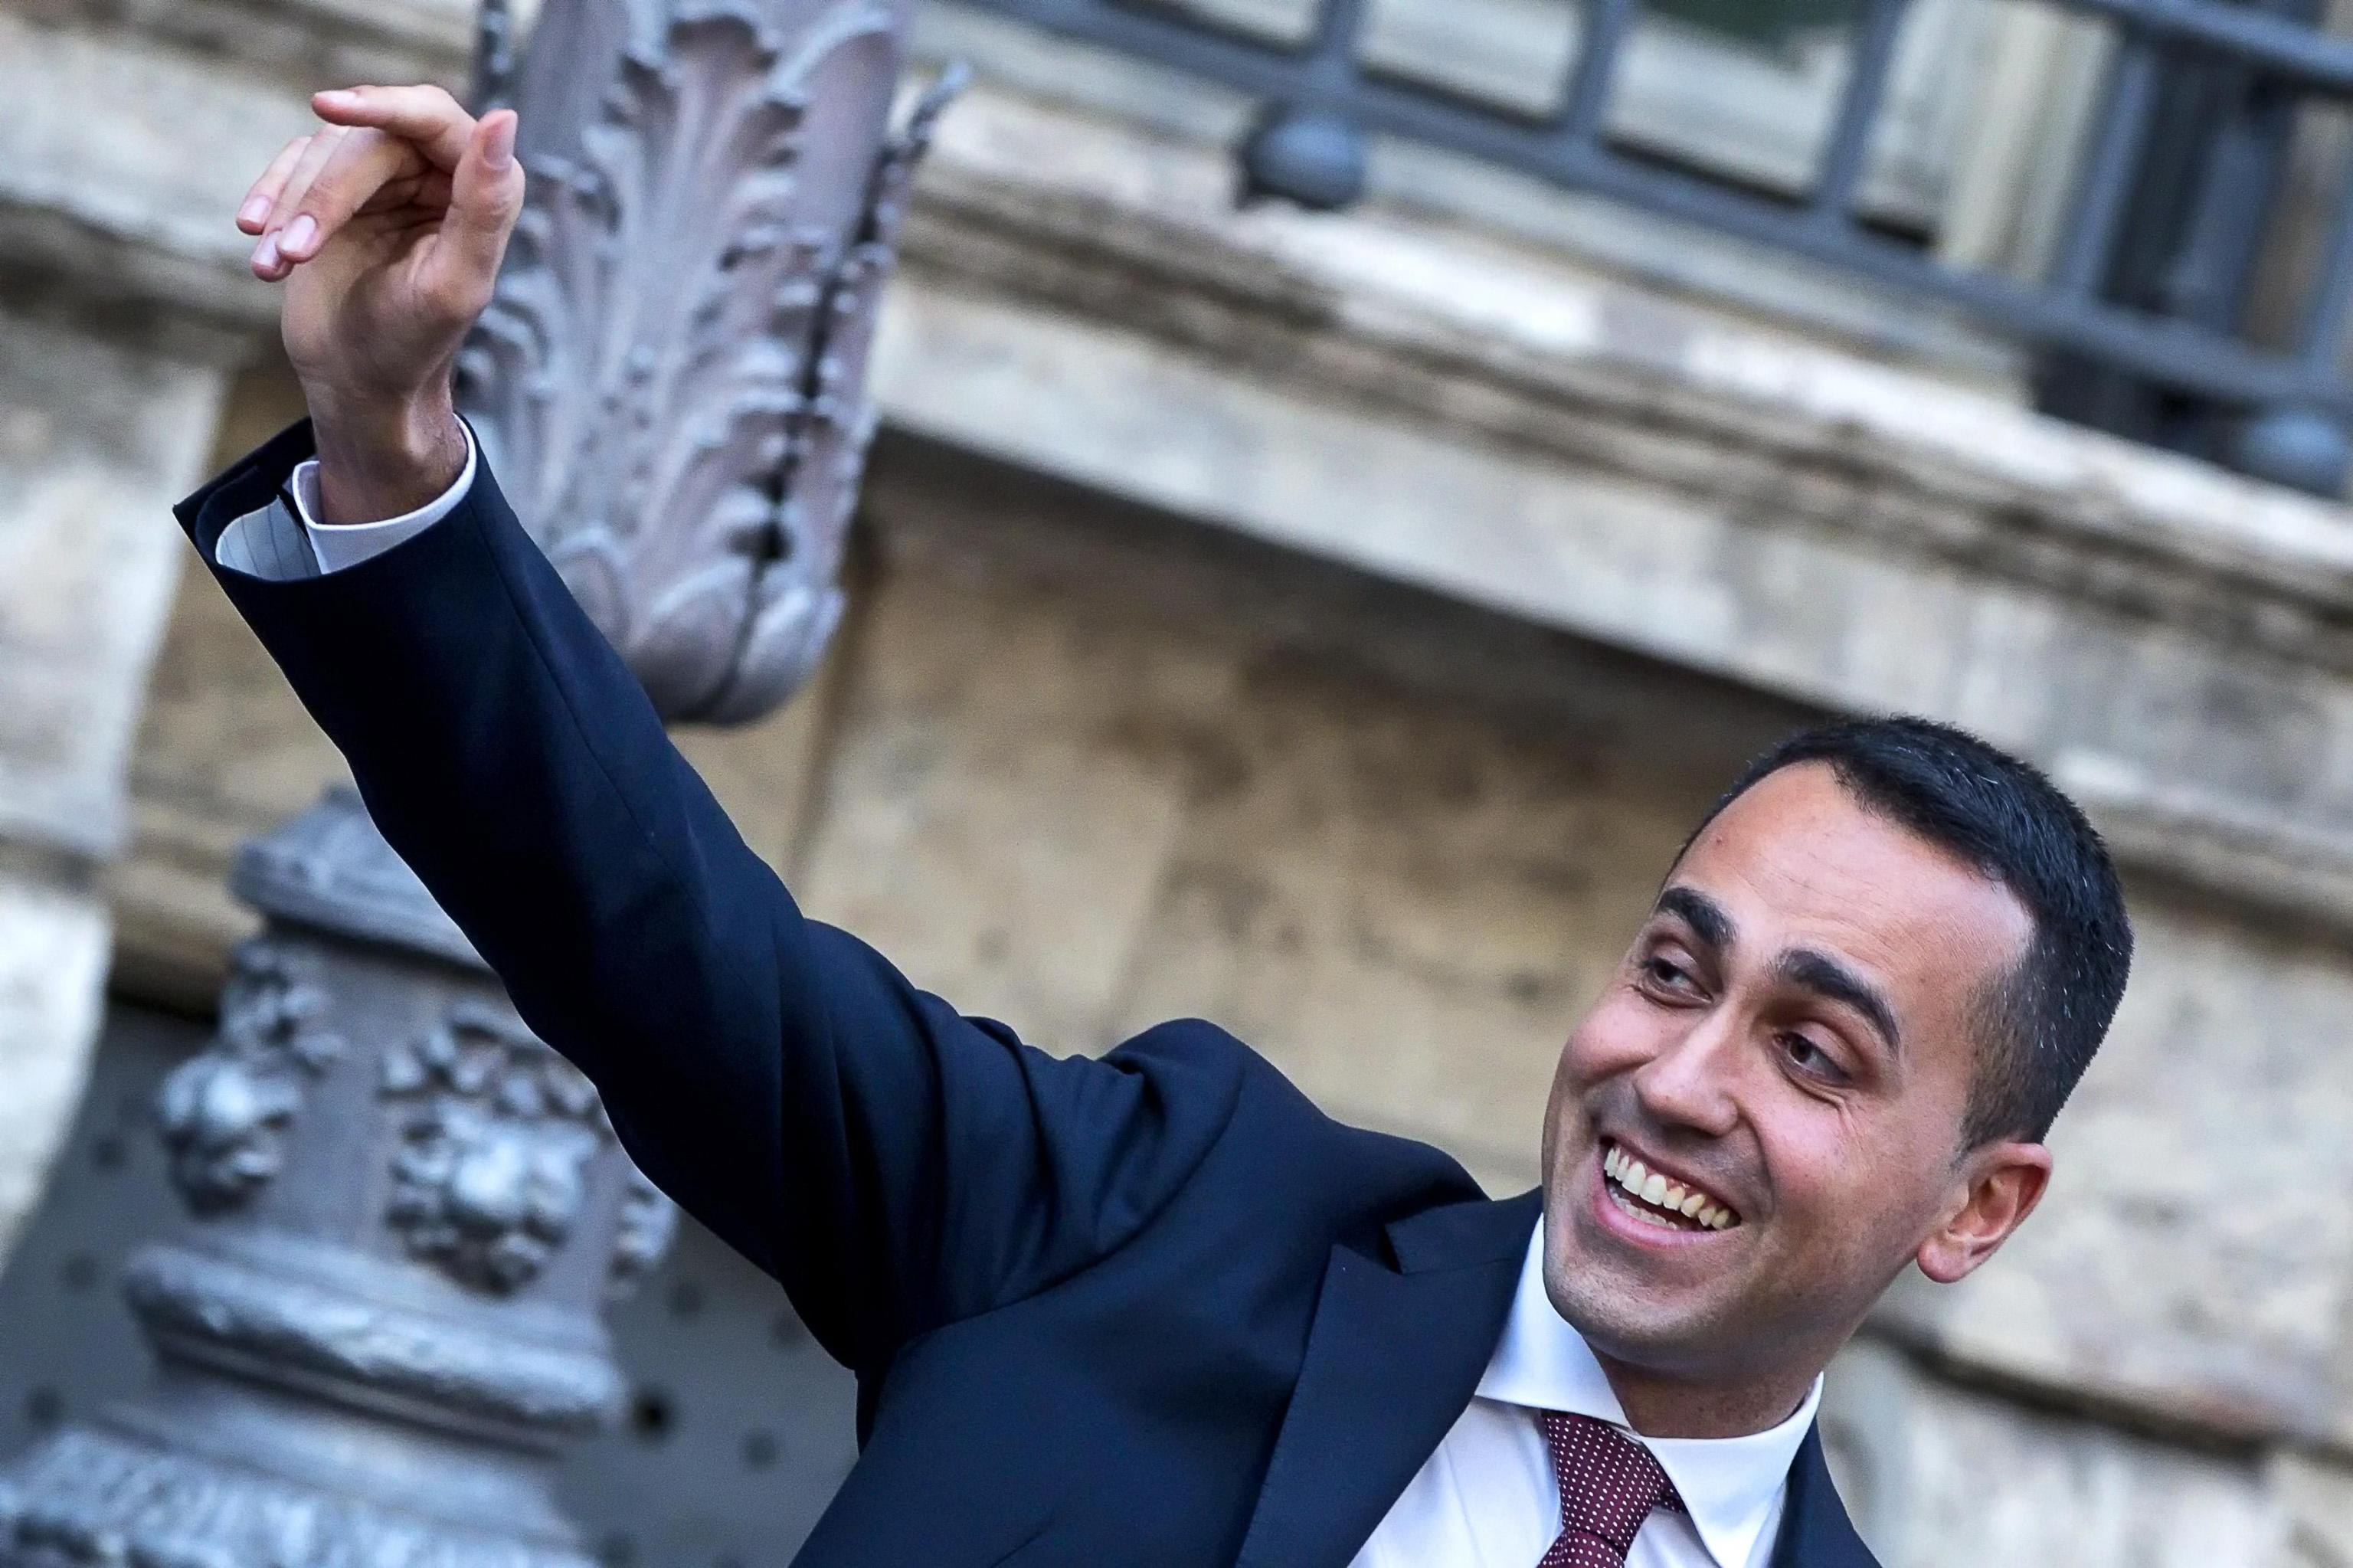 Ιταλία – Πέντε Αστέρια: Κυβέρνηση μόνο με τη Λέγκα ή την κεντροαριστερά